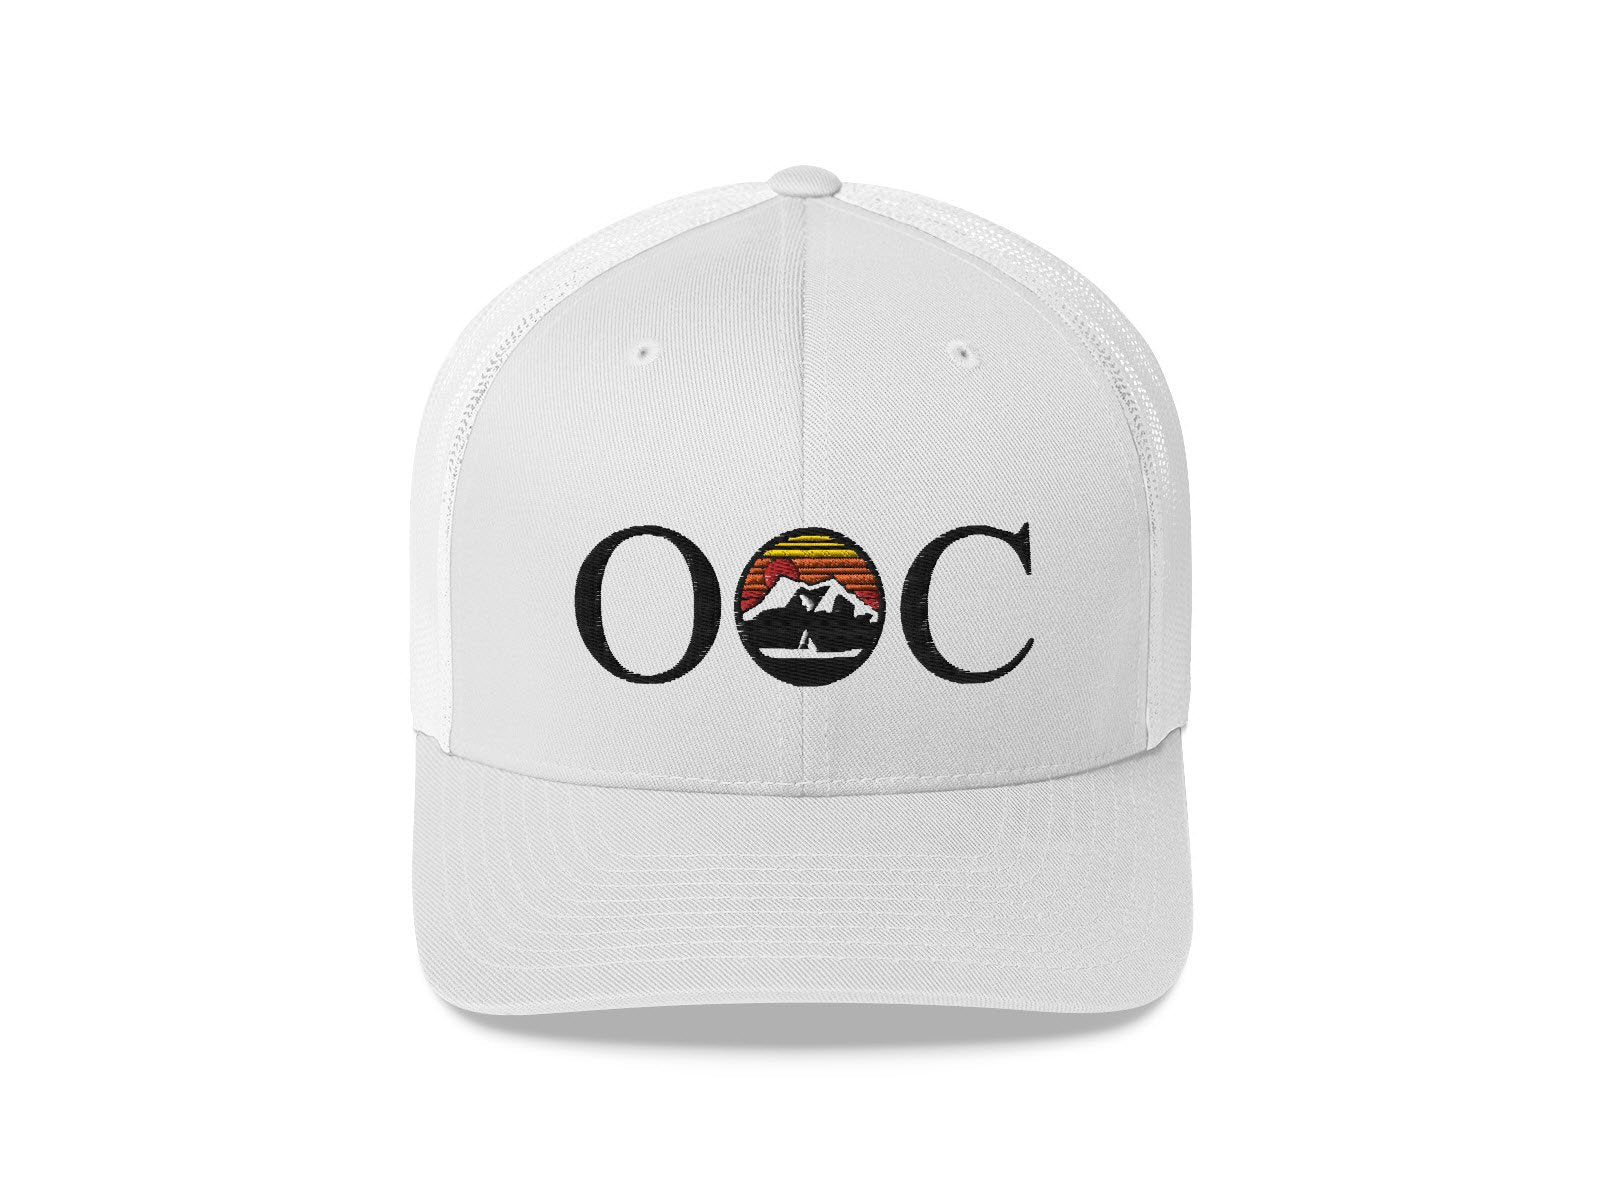 Gorra Trucker con logotipo OOC del Olympic Outdoor Center